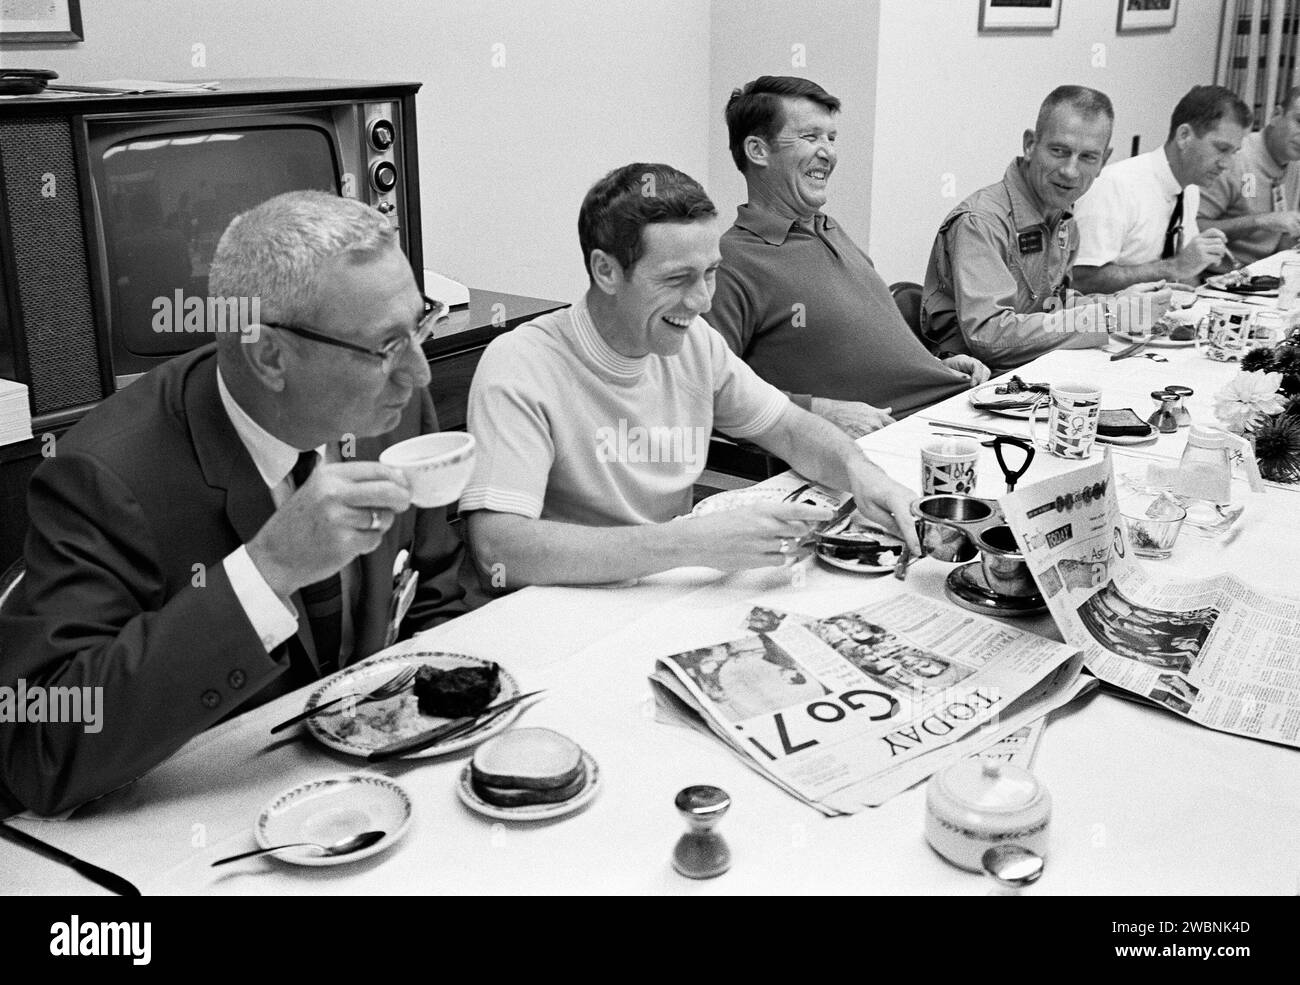 CAP CANAVERAL, Floride. -- deux des trois astronautes d'Apollo 7 déjeunent avec des responsables de la National Aeronautics and Space Administration au KSC avant leur mission orbitale terrestre avec l'astronaute Walter Cunningham, non montré. Banque D'Images